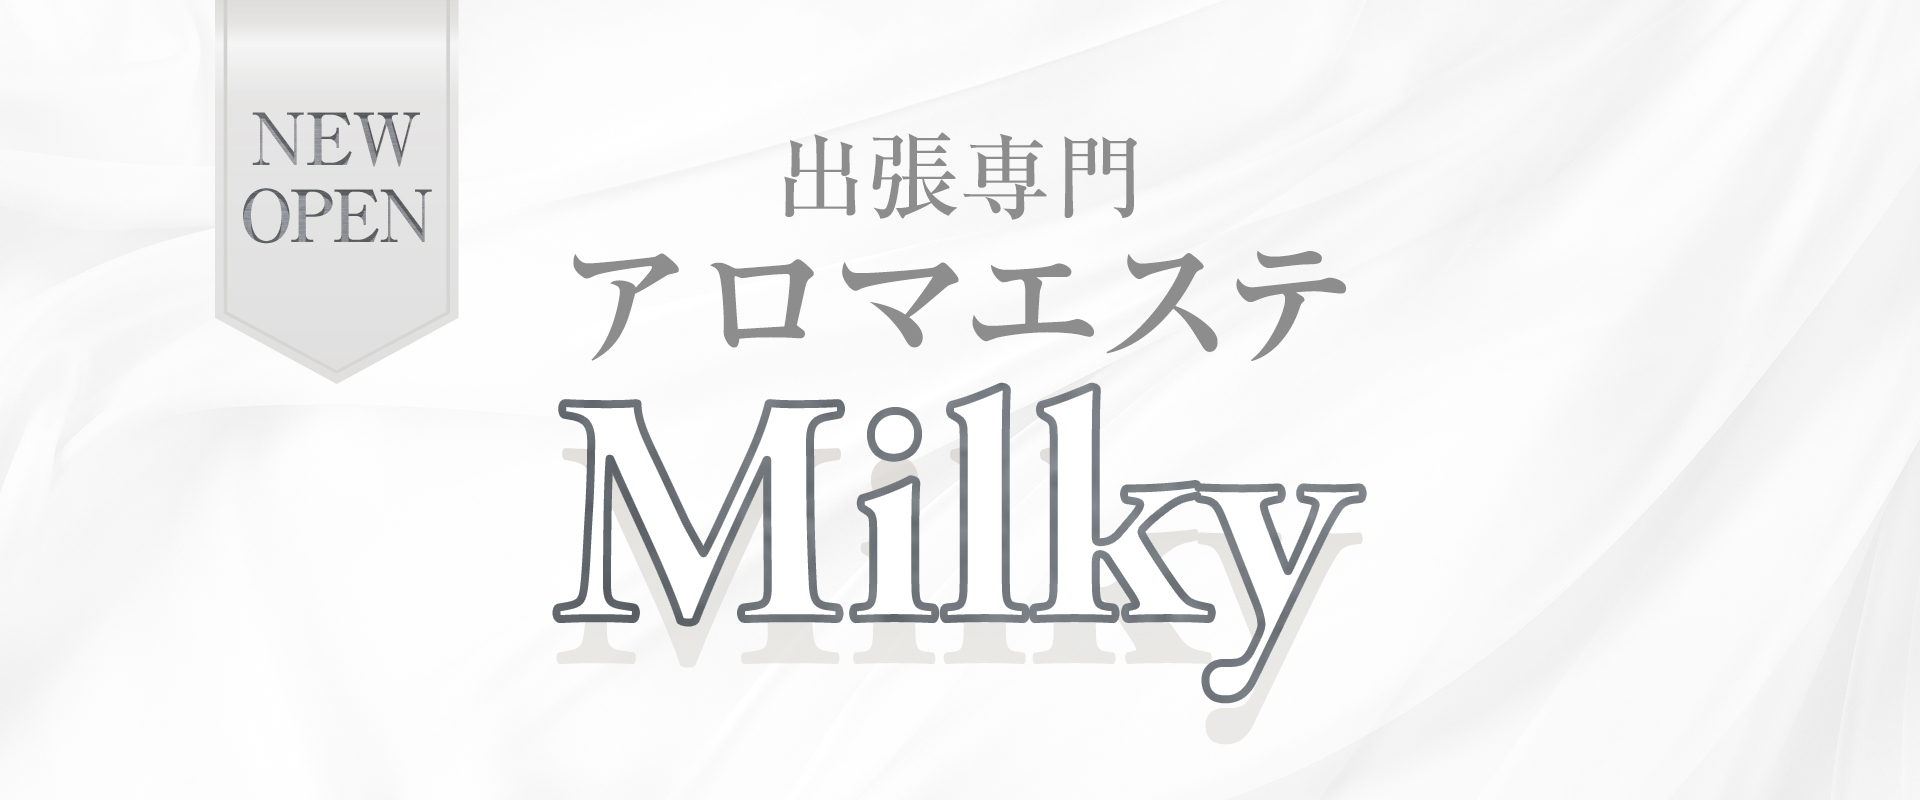 アロマエステ Milky 函館店